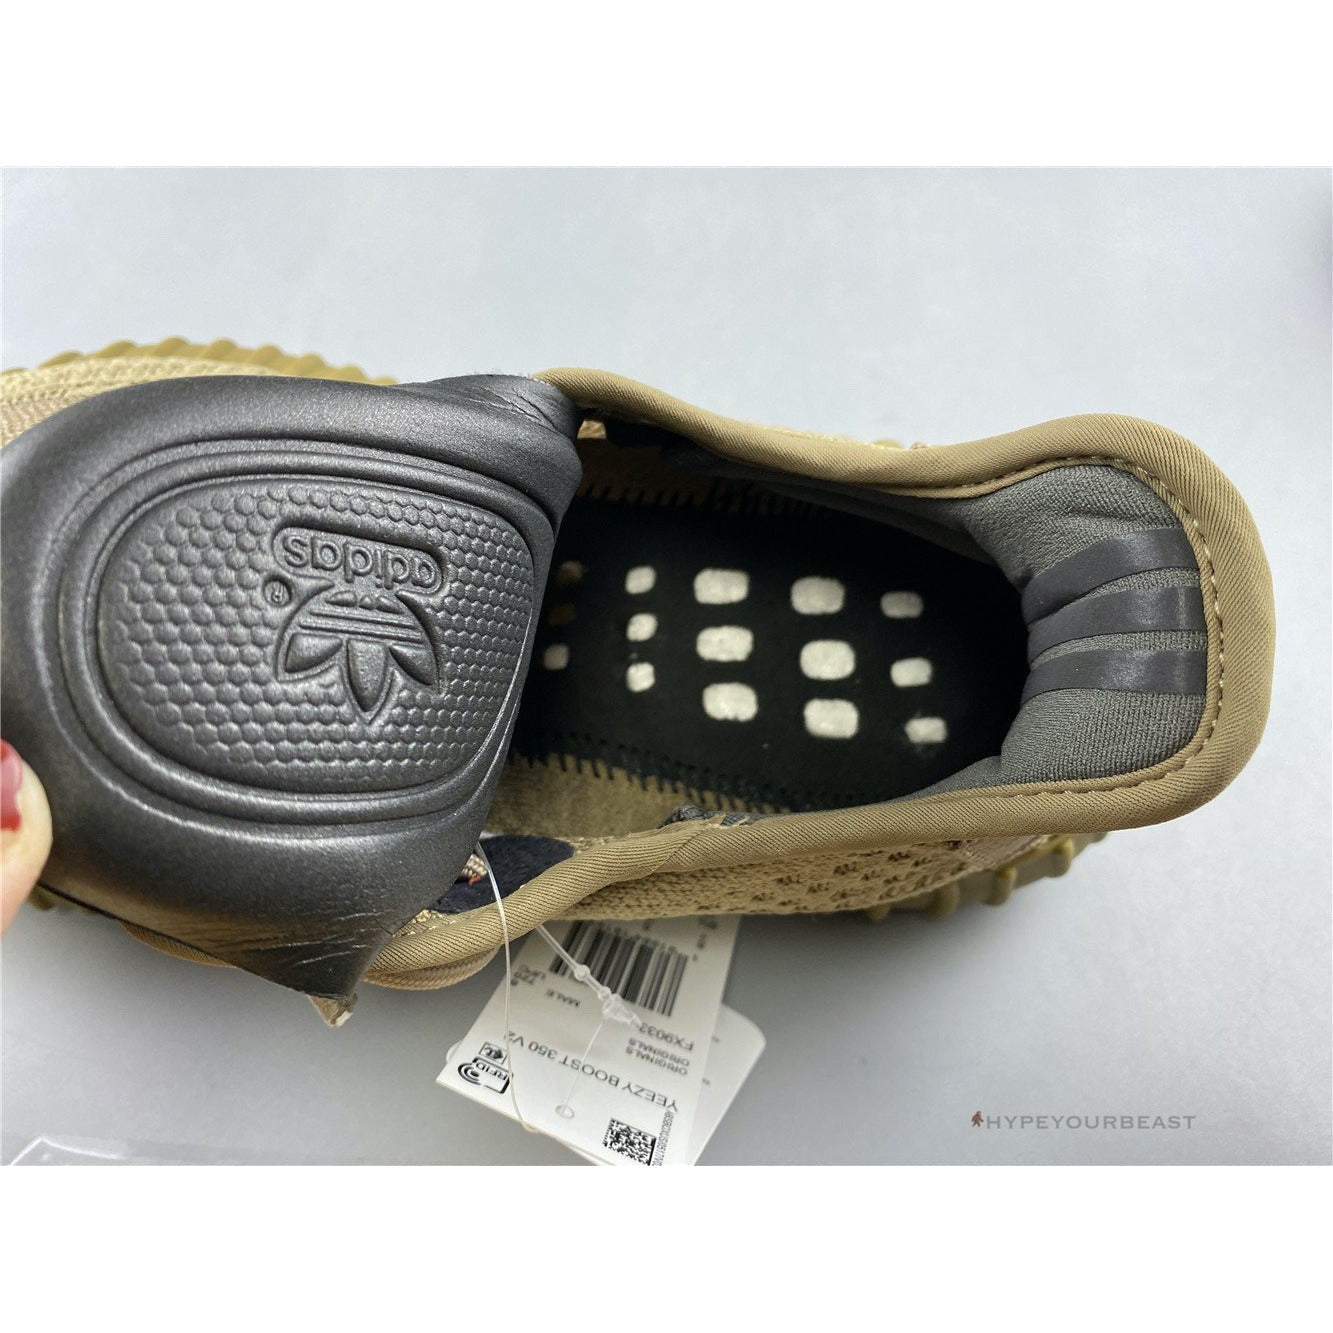 Adidas Yeezy 350 V2 Marsh